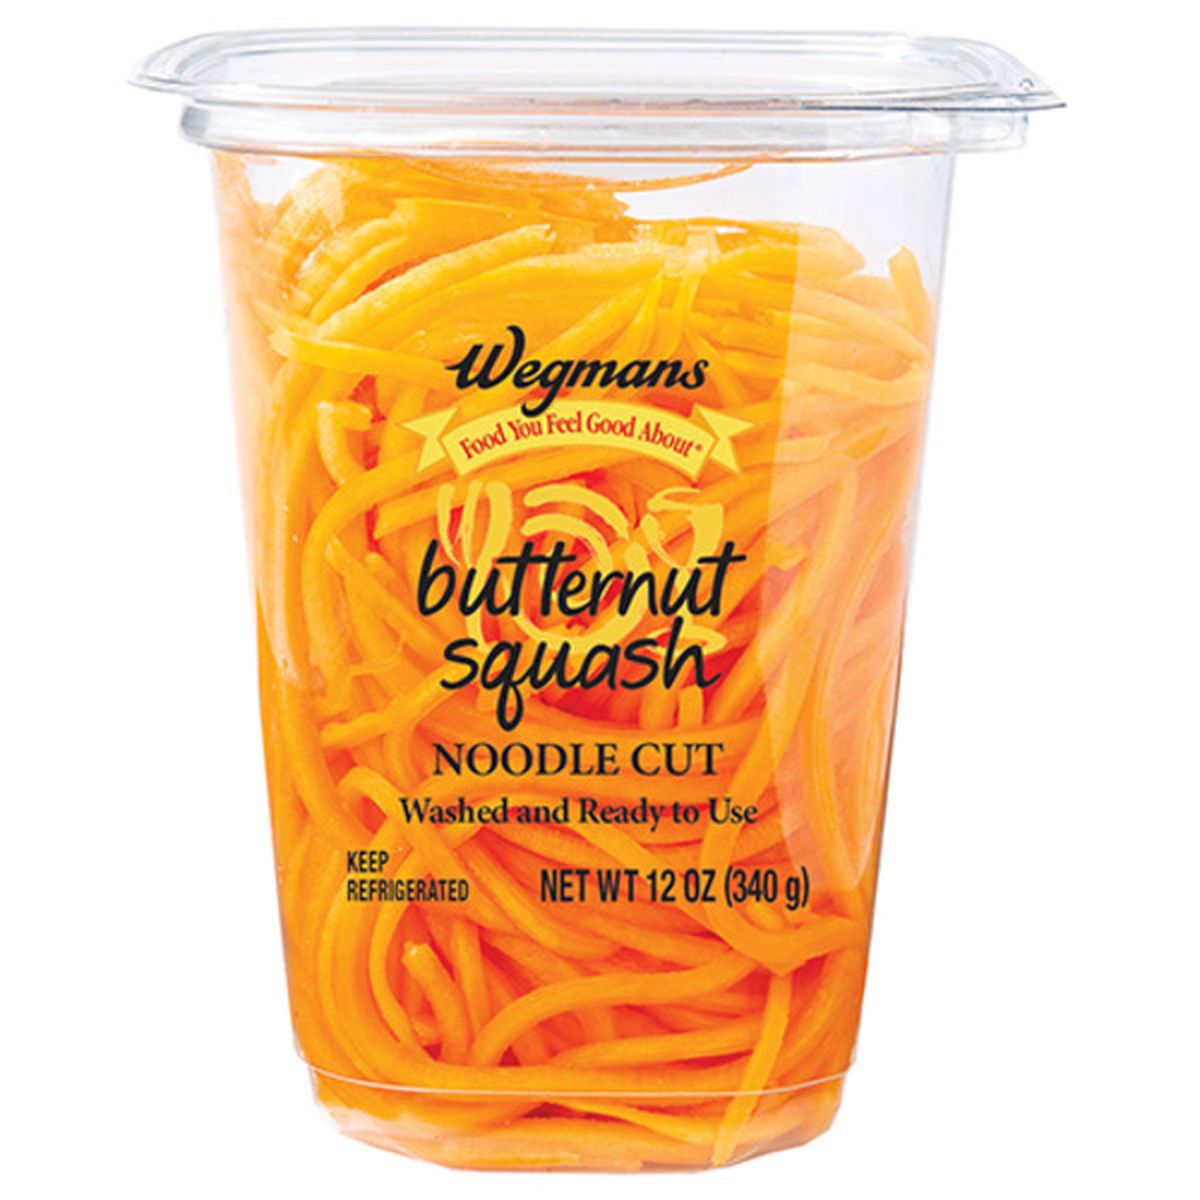 Calories in Butternut Squash Noodle Cut